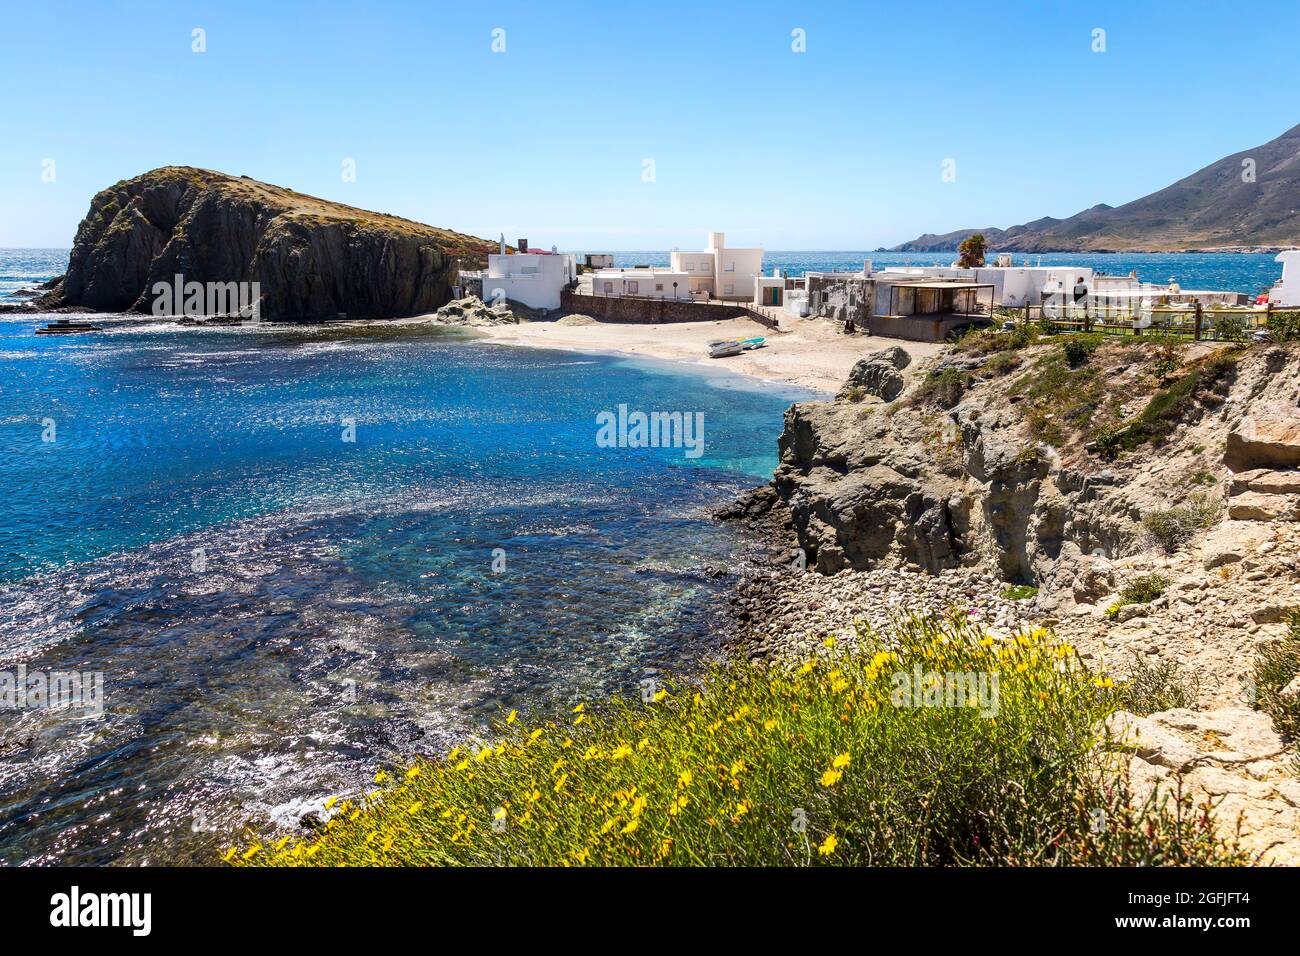 Landscape of the coastal area Cabo de Gata, province of Almeria, Andalucia, Spain. Landscape with rock and houses in the village of La Isleta del Moro Stock Photo